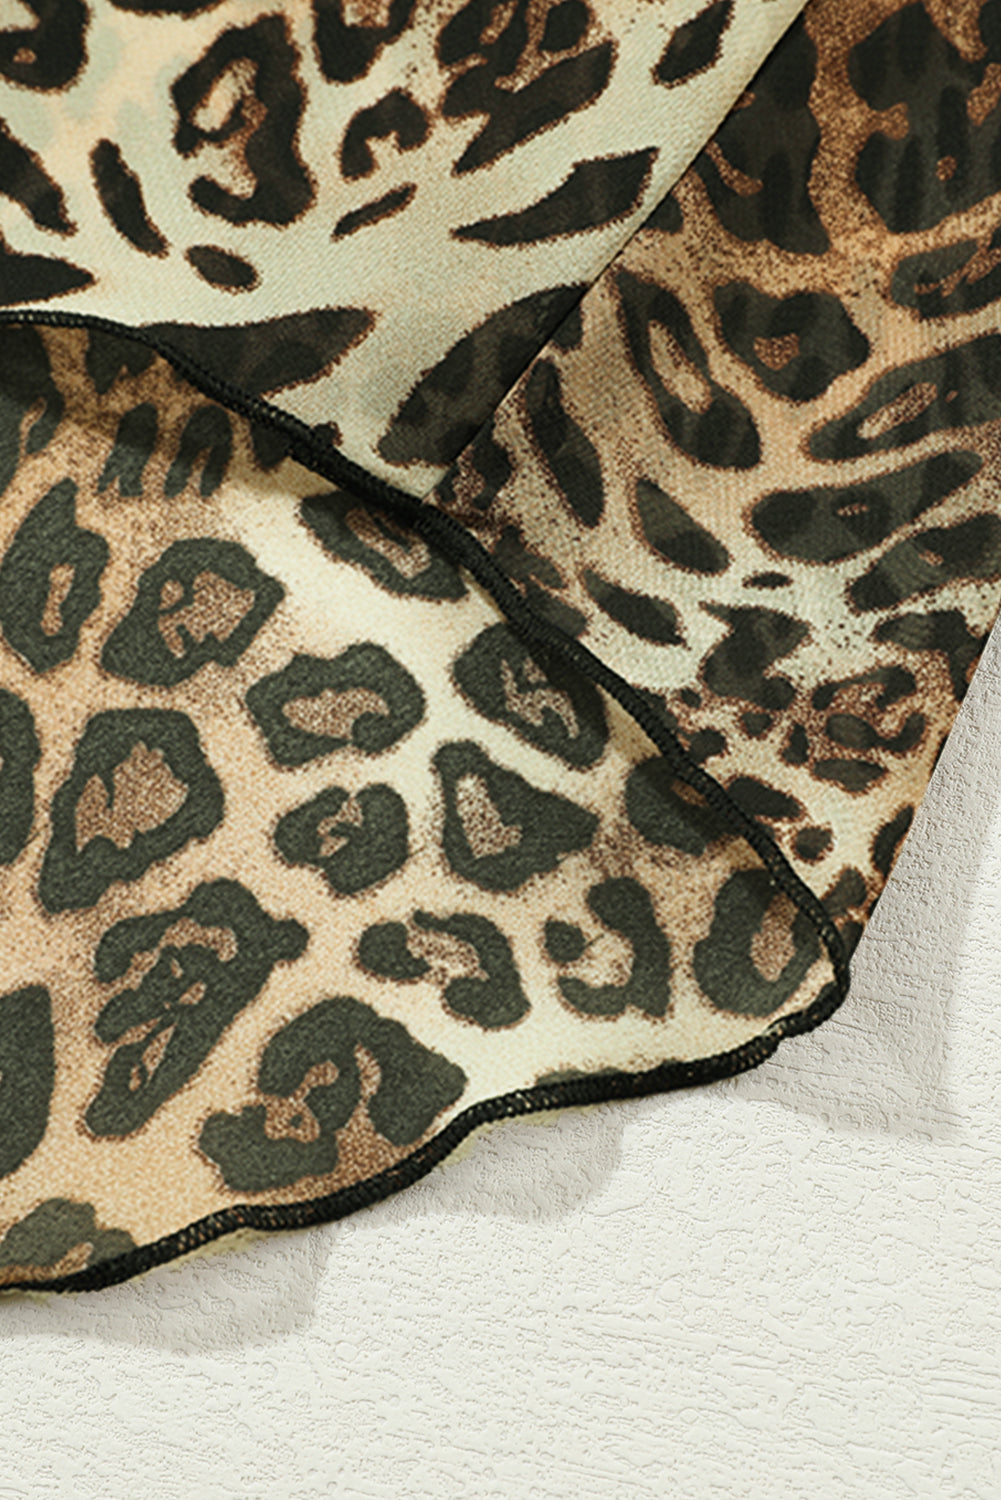 Smocked Waist Leopard Skirt